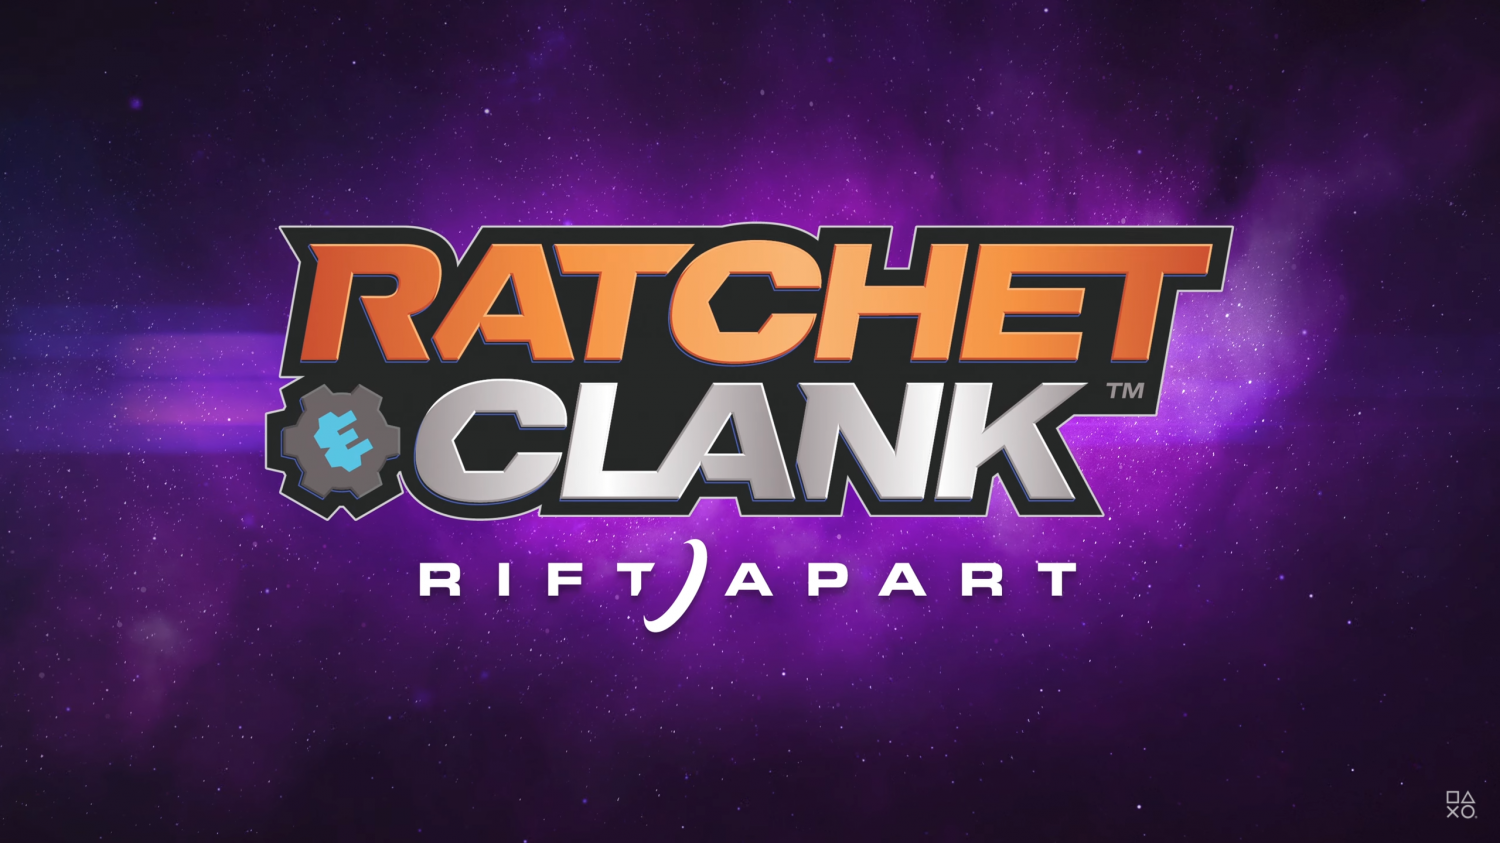 Ratchet clank сквозь миры steam фото 36